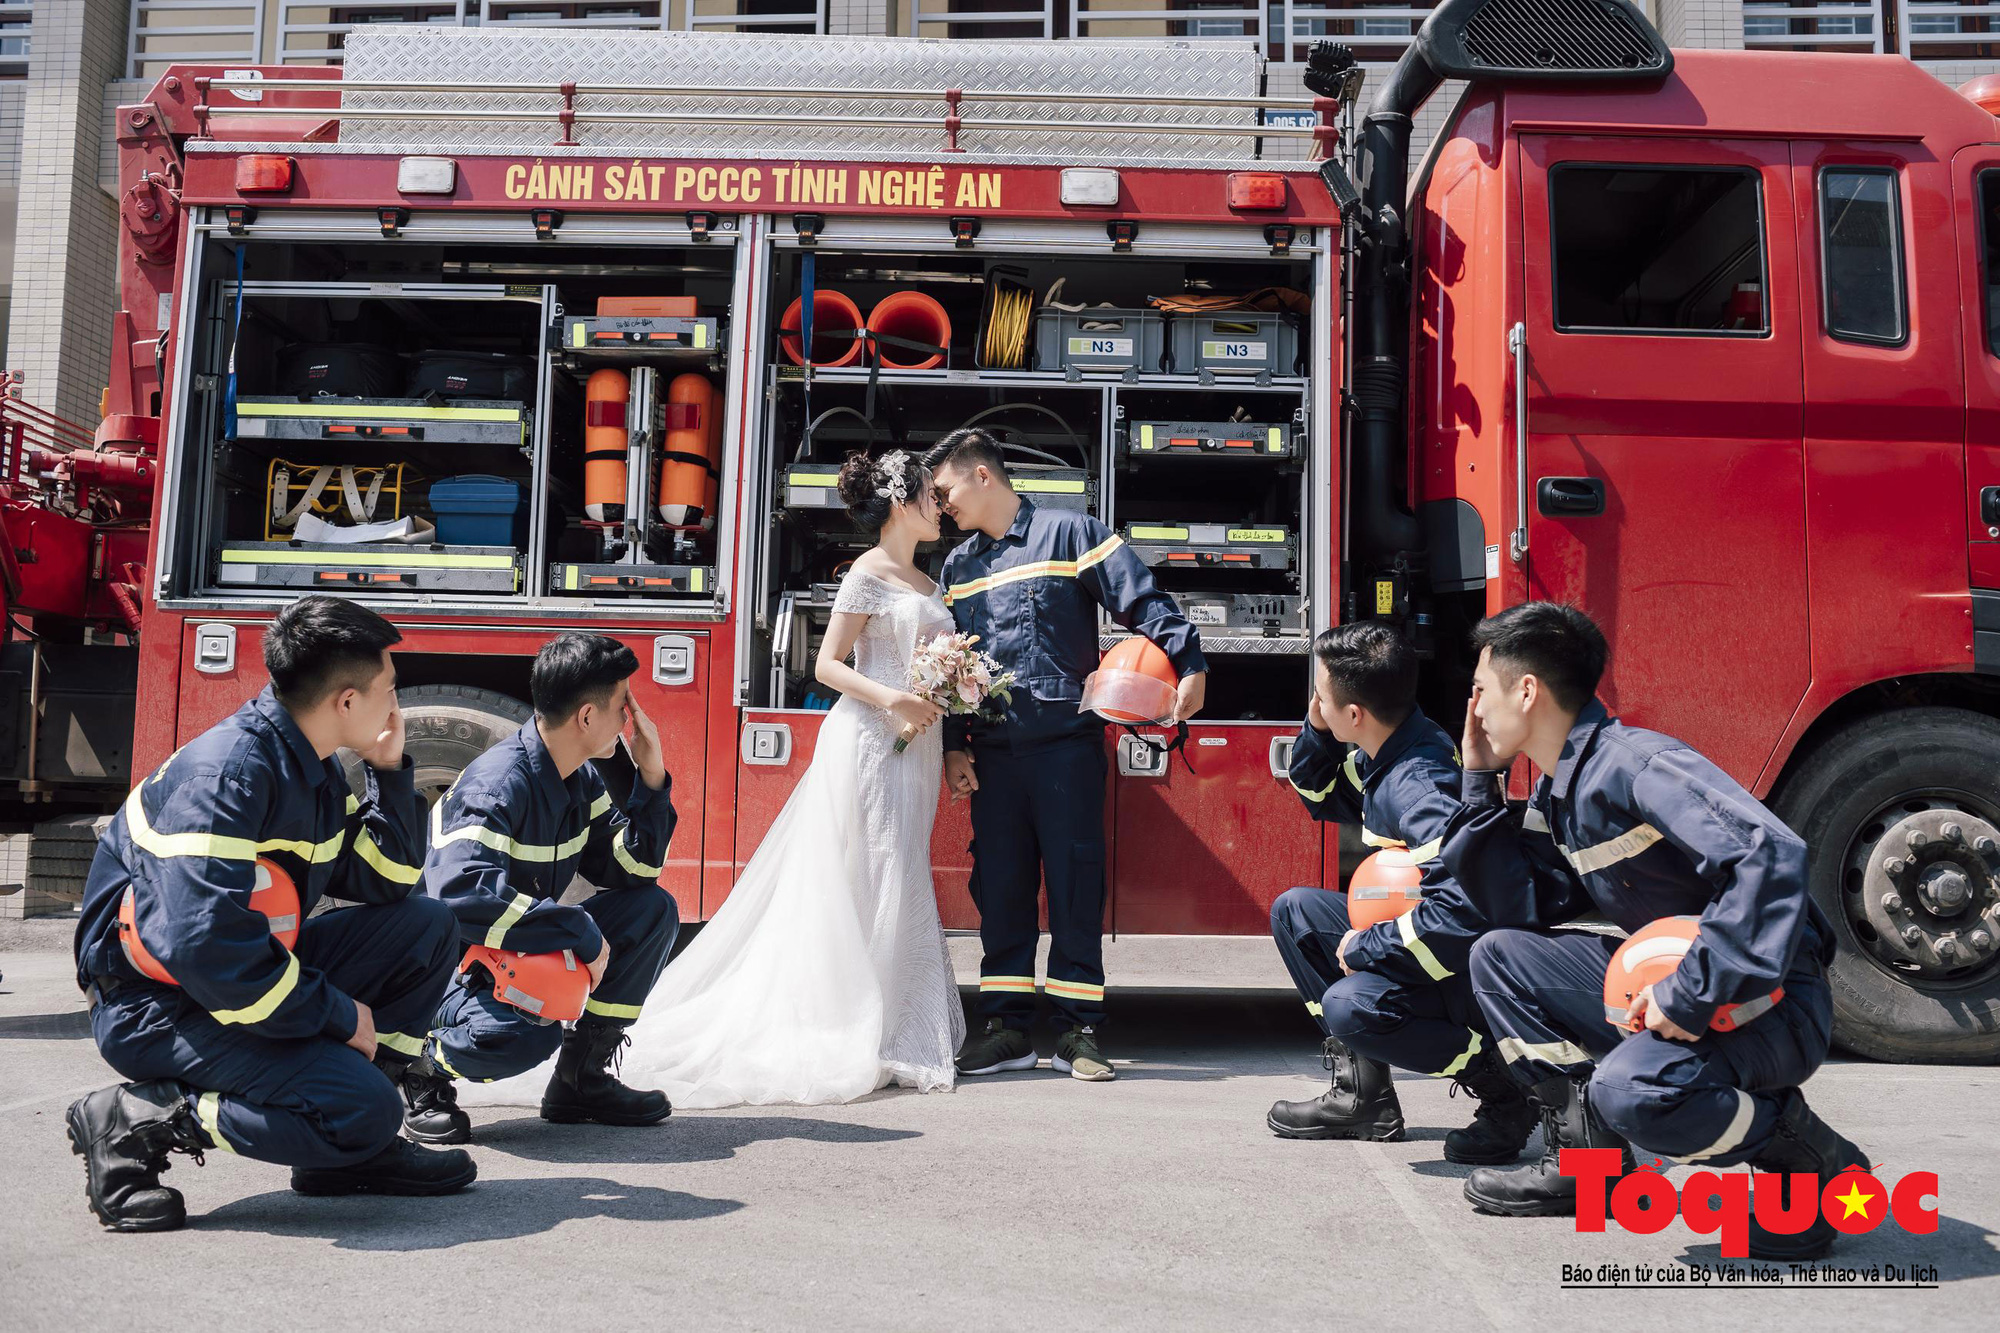 Lính cứu hỏa luôn là những người anh hùng vô danh tại các địa phương. Hãy xem hình ảnh của những người lính cứu hỏa trẻ 9x này tại Nghệ An và cảm nhận tinh thần tự hào và trách nhiệm mà họ mang trong công việc của mình.